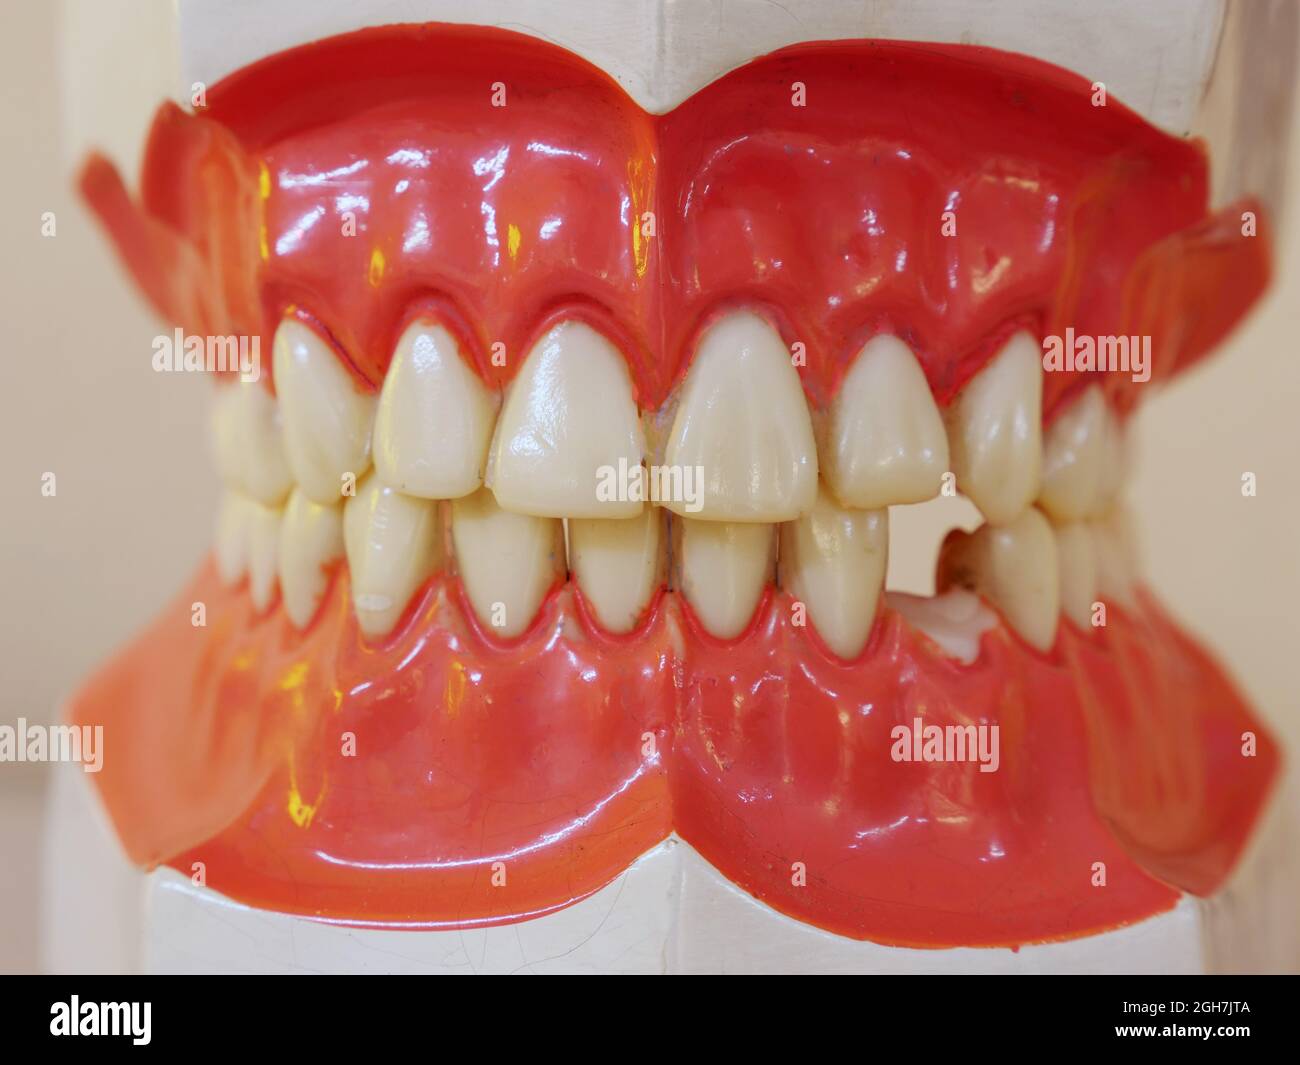 un modèle de dents humaines avec une dent cassée Banque D'Images